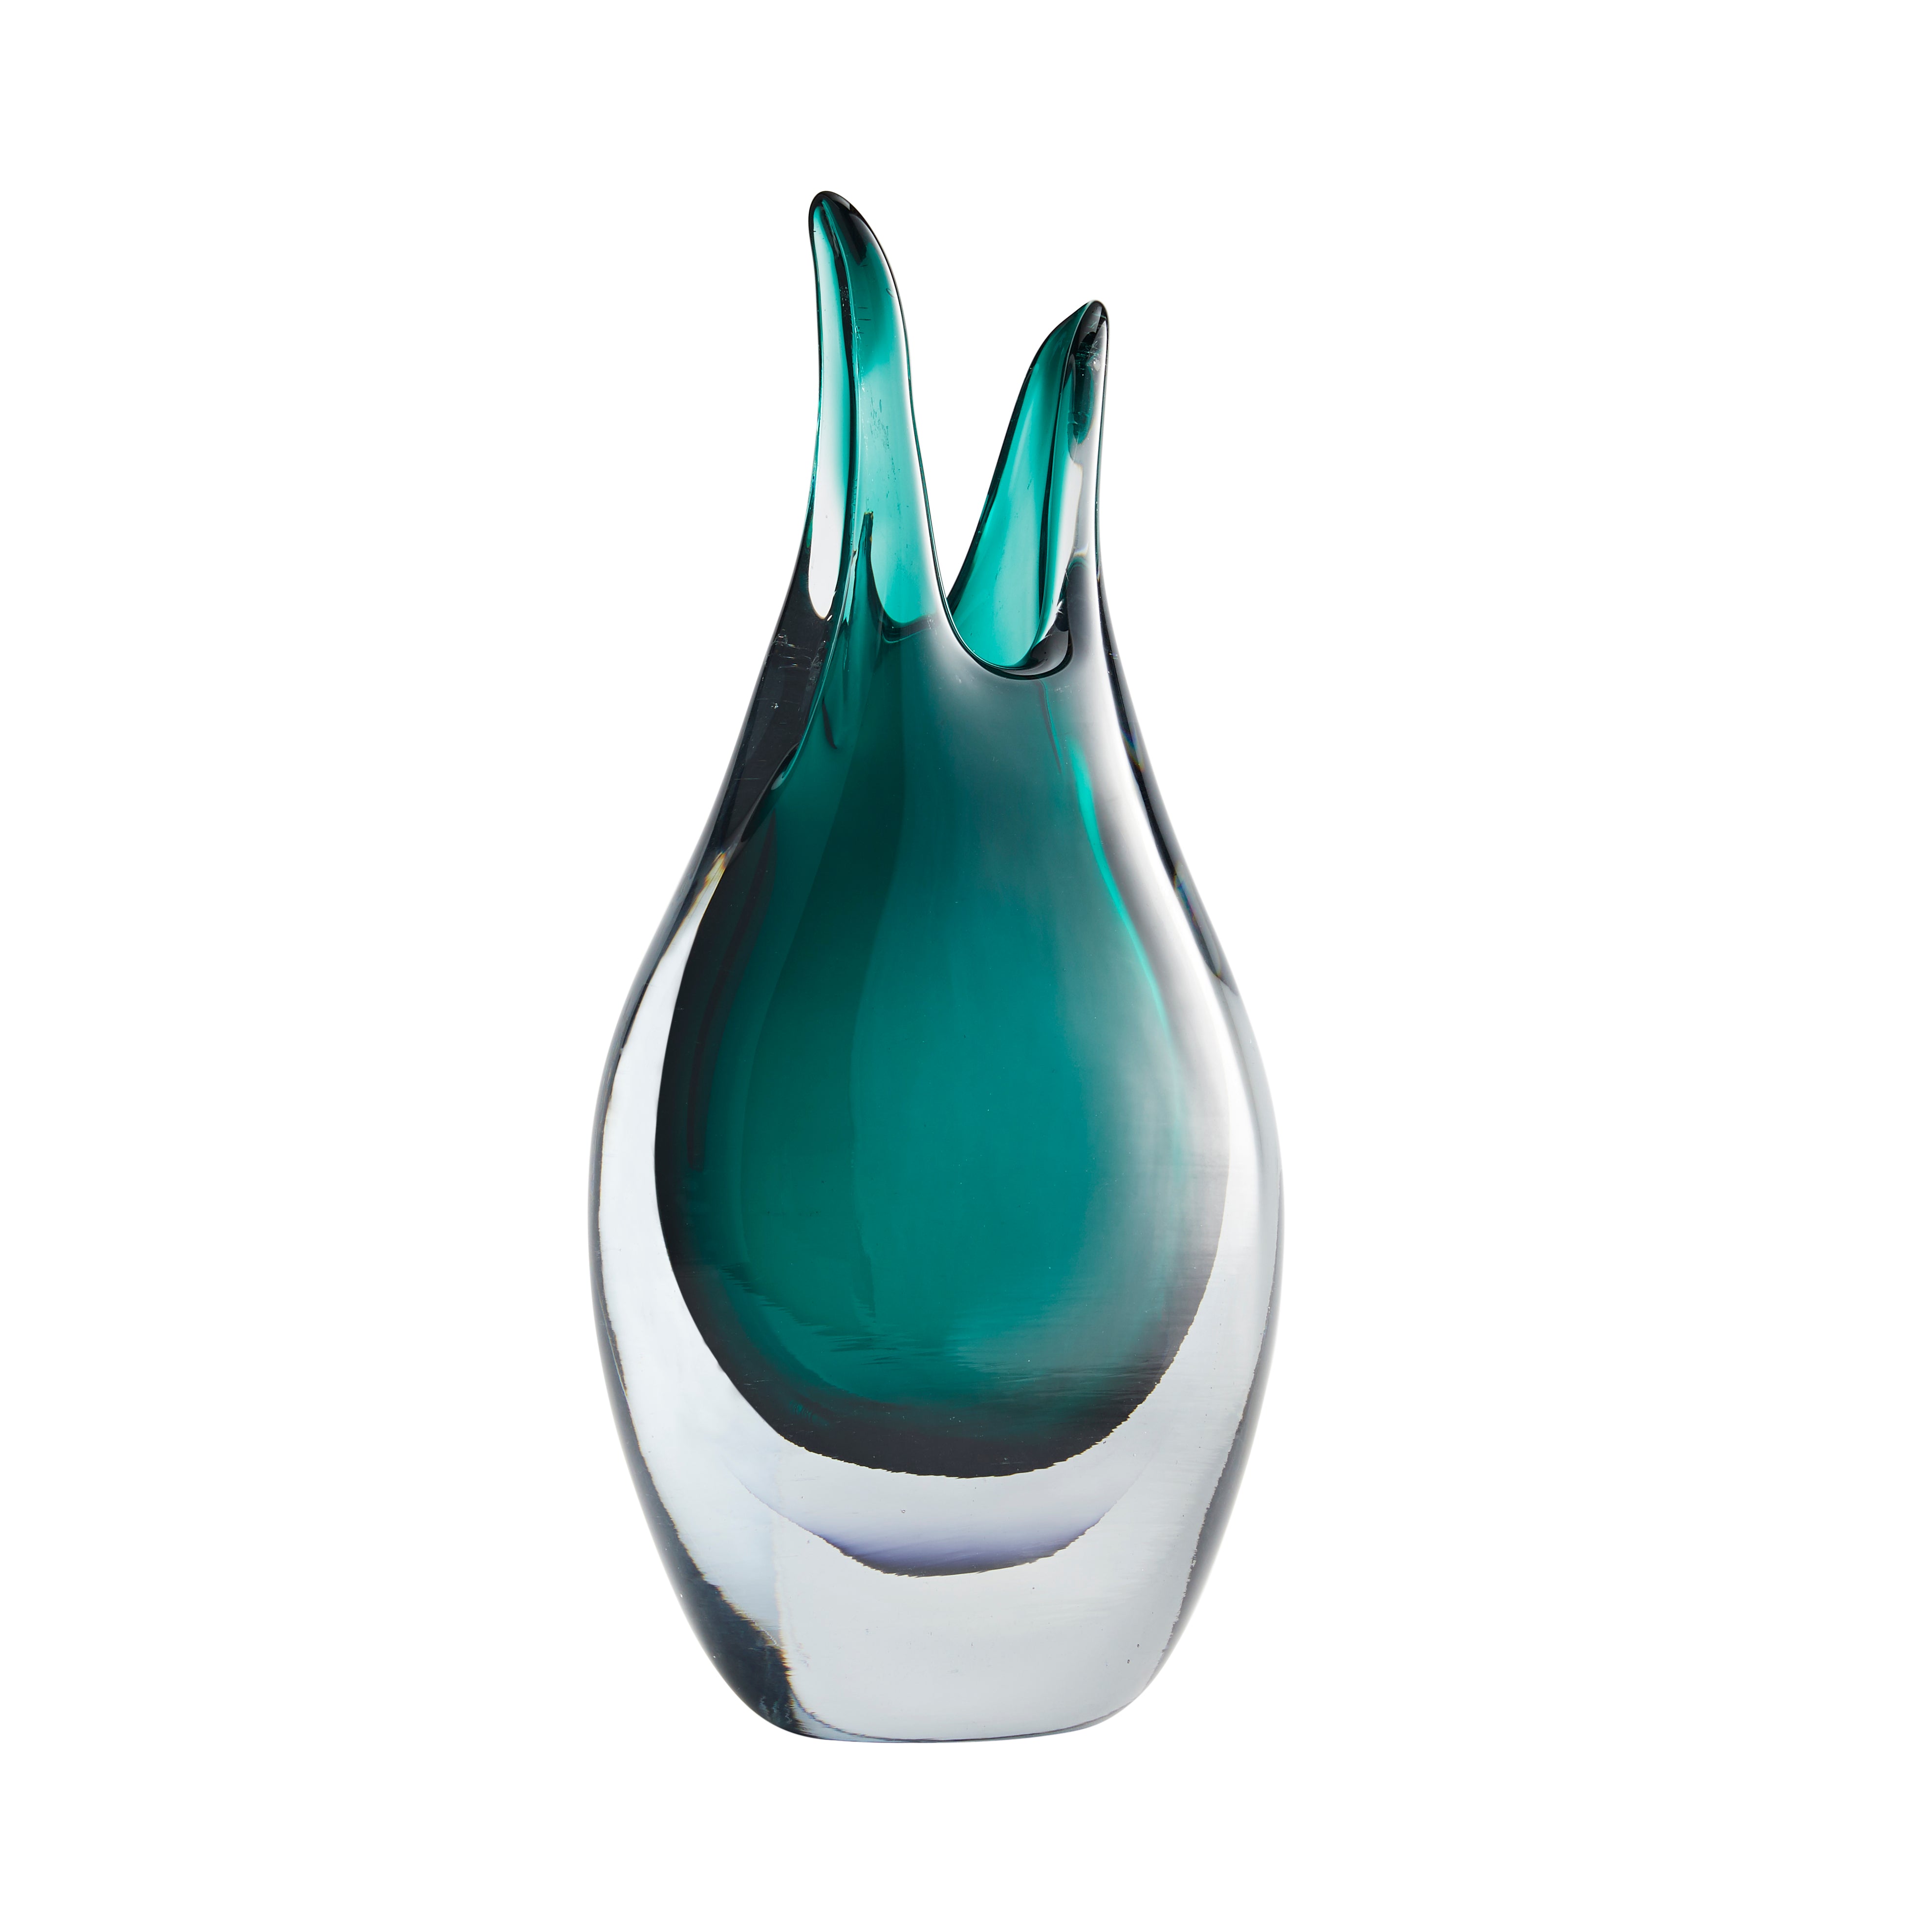 Arteriors Gretchen Vase 7849 Décor/Home Accent Cyan Design   